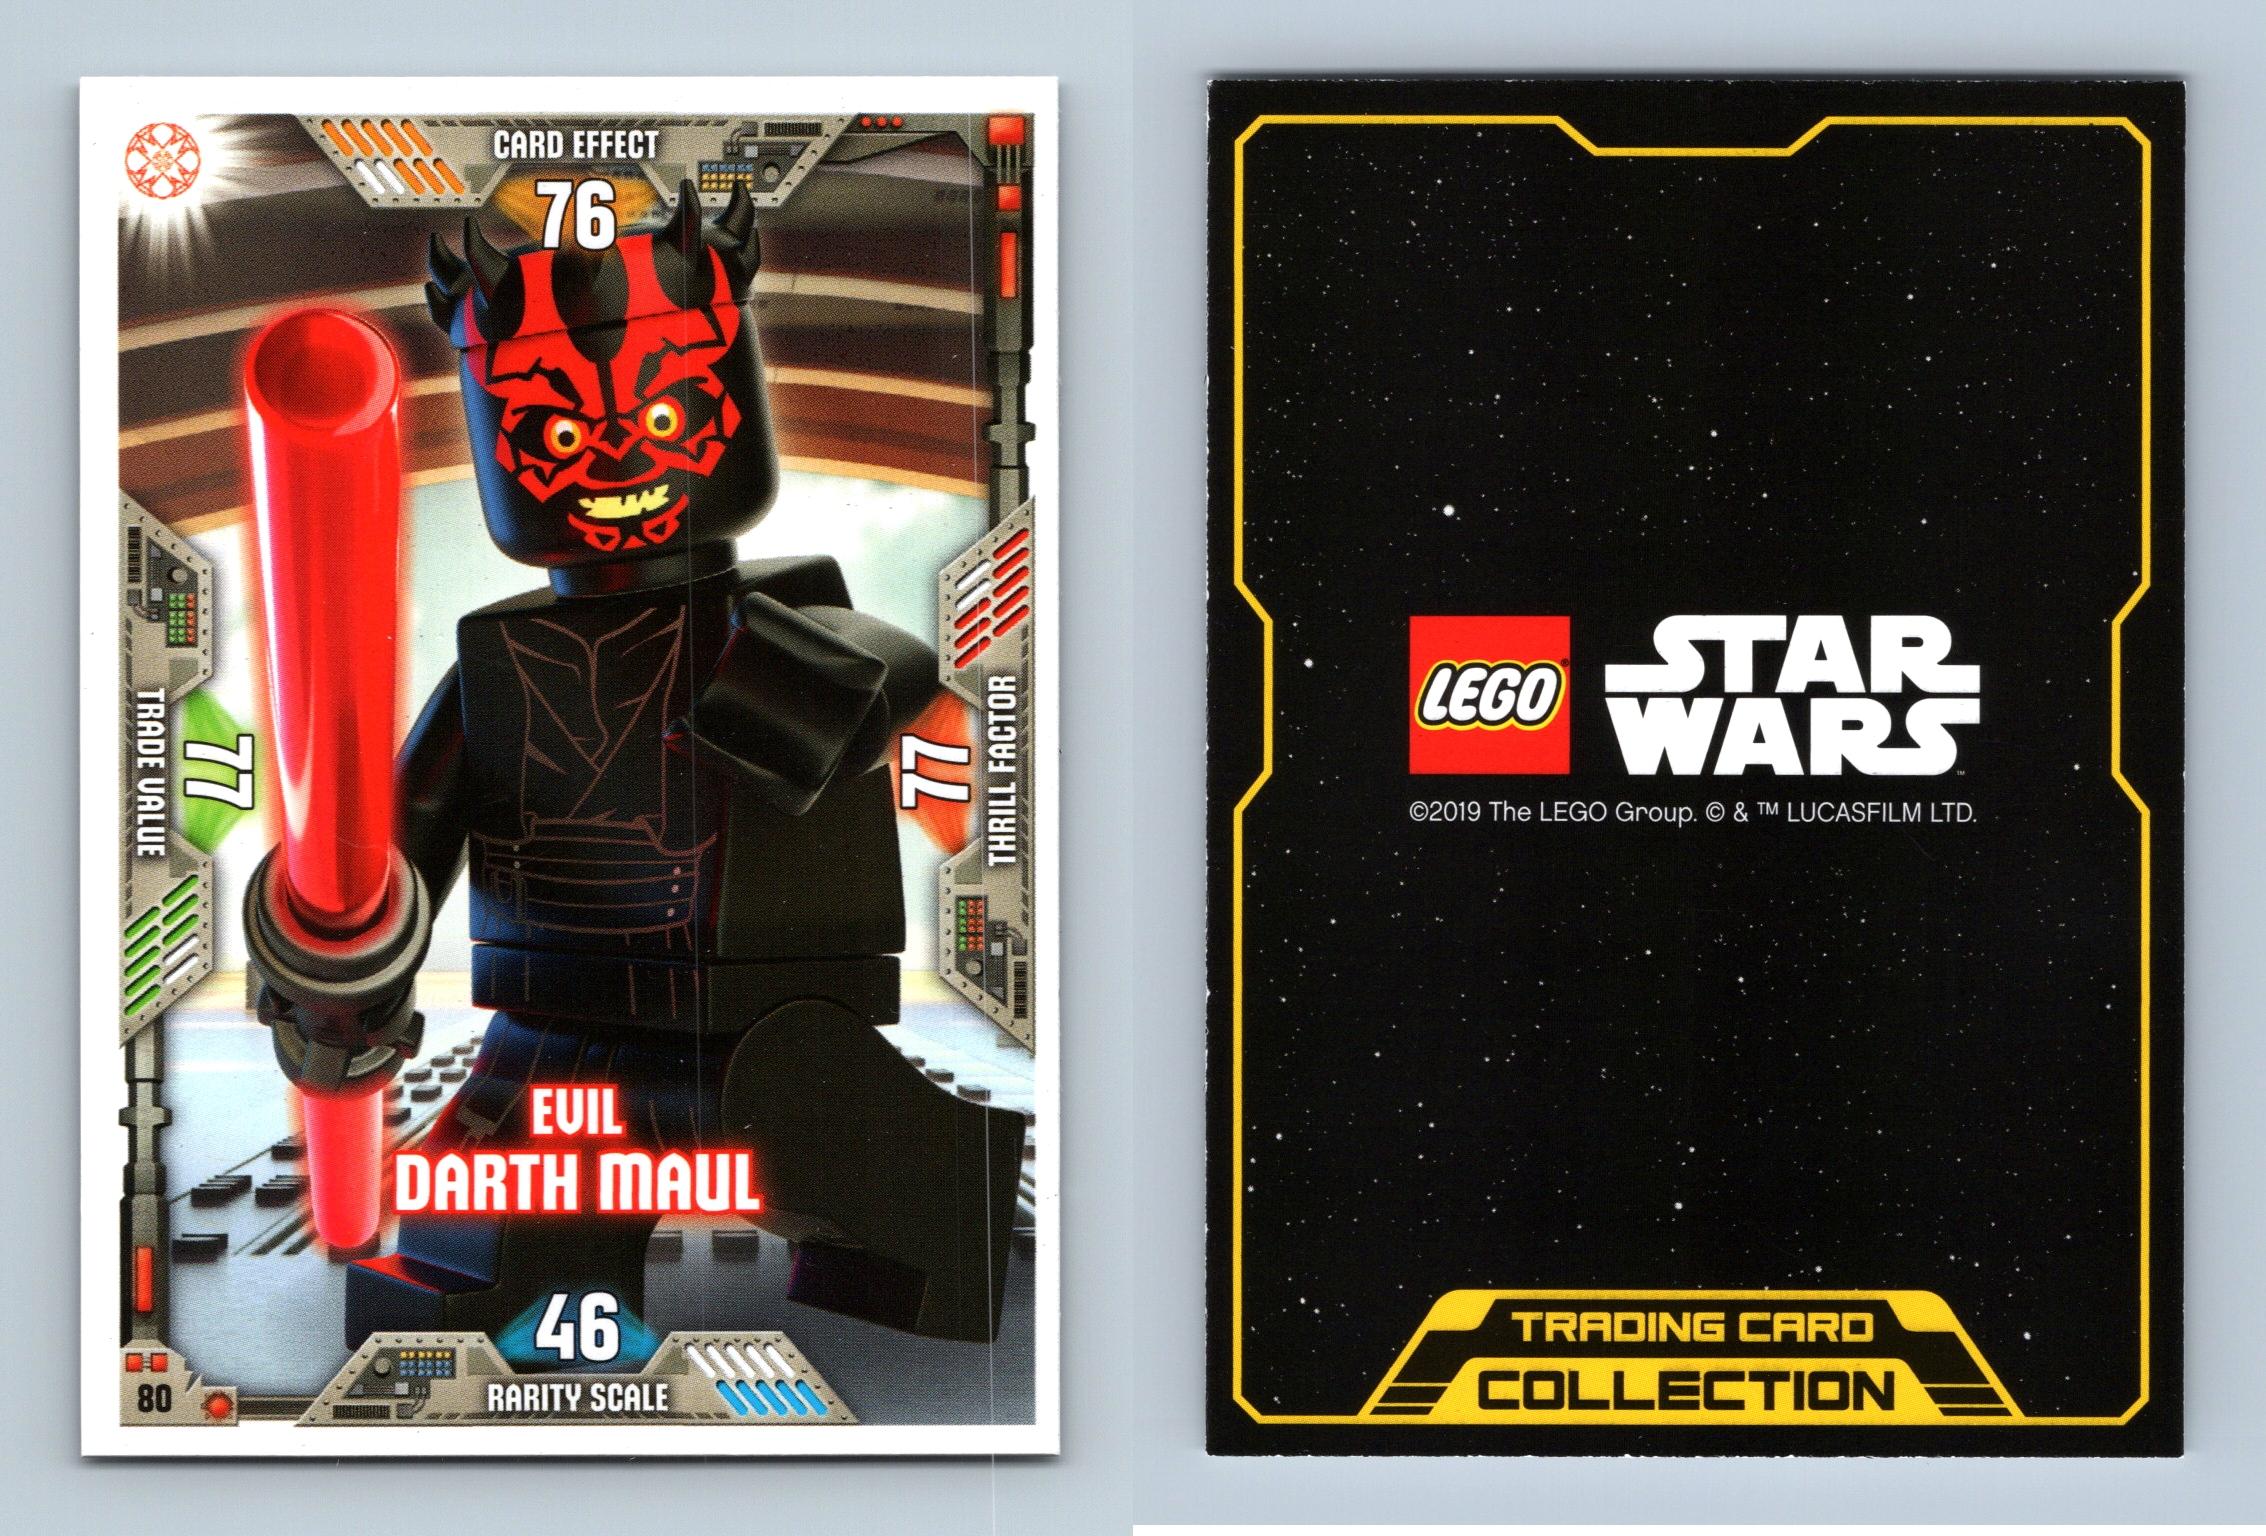 80 LEGO Star Wars Serie 2 Böser Darth Maul